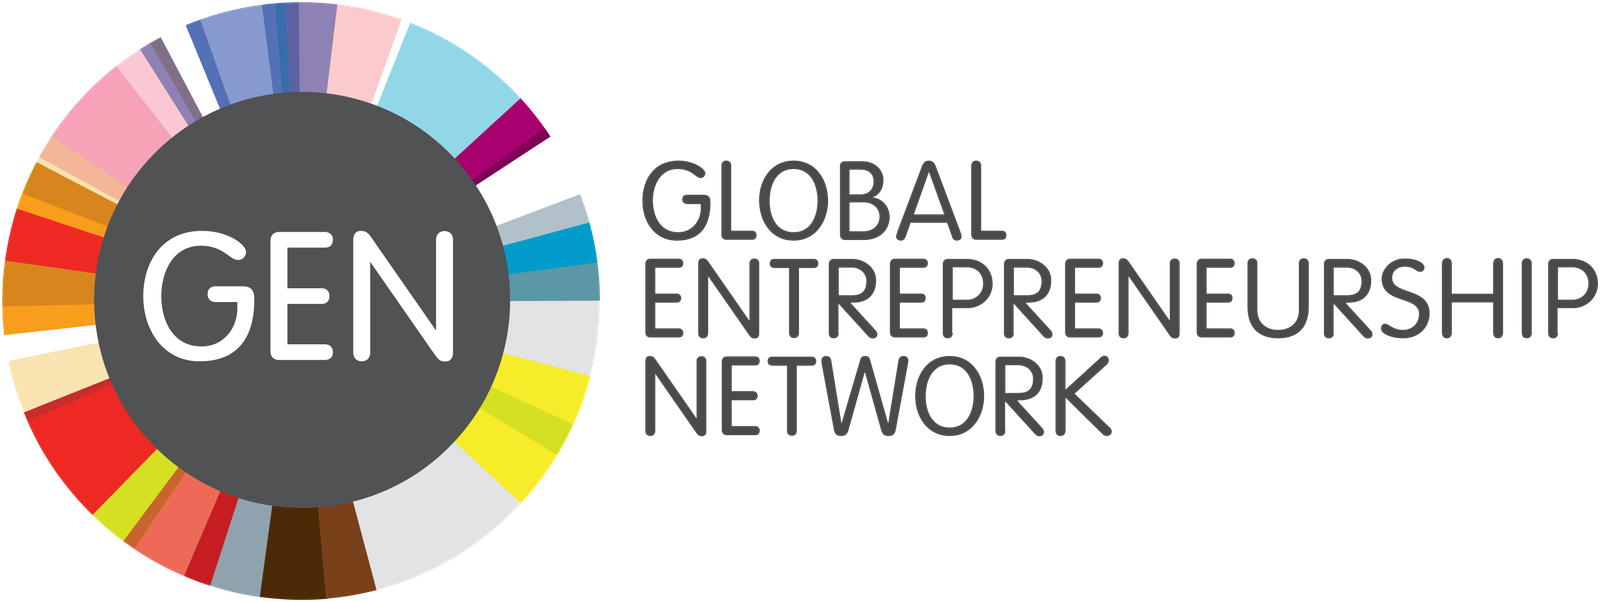 Global Entrepreneurship Network